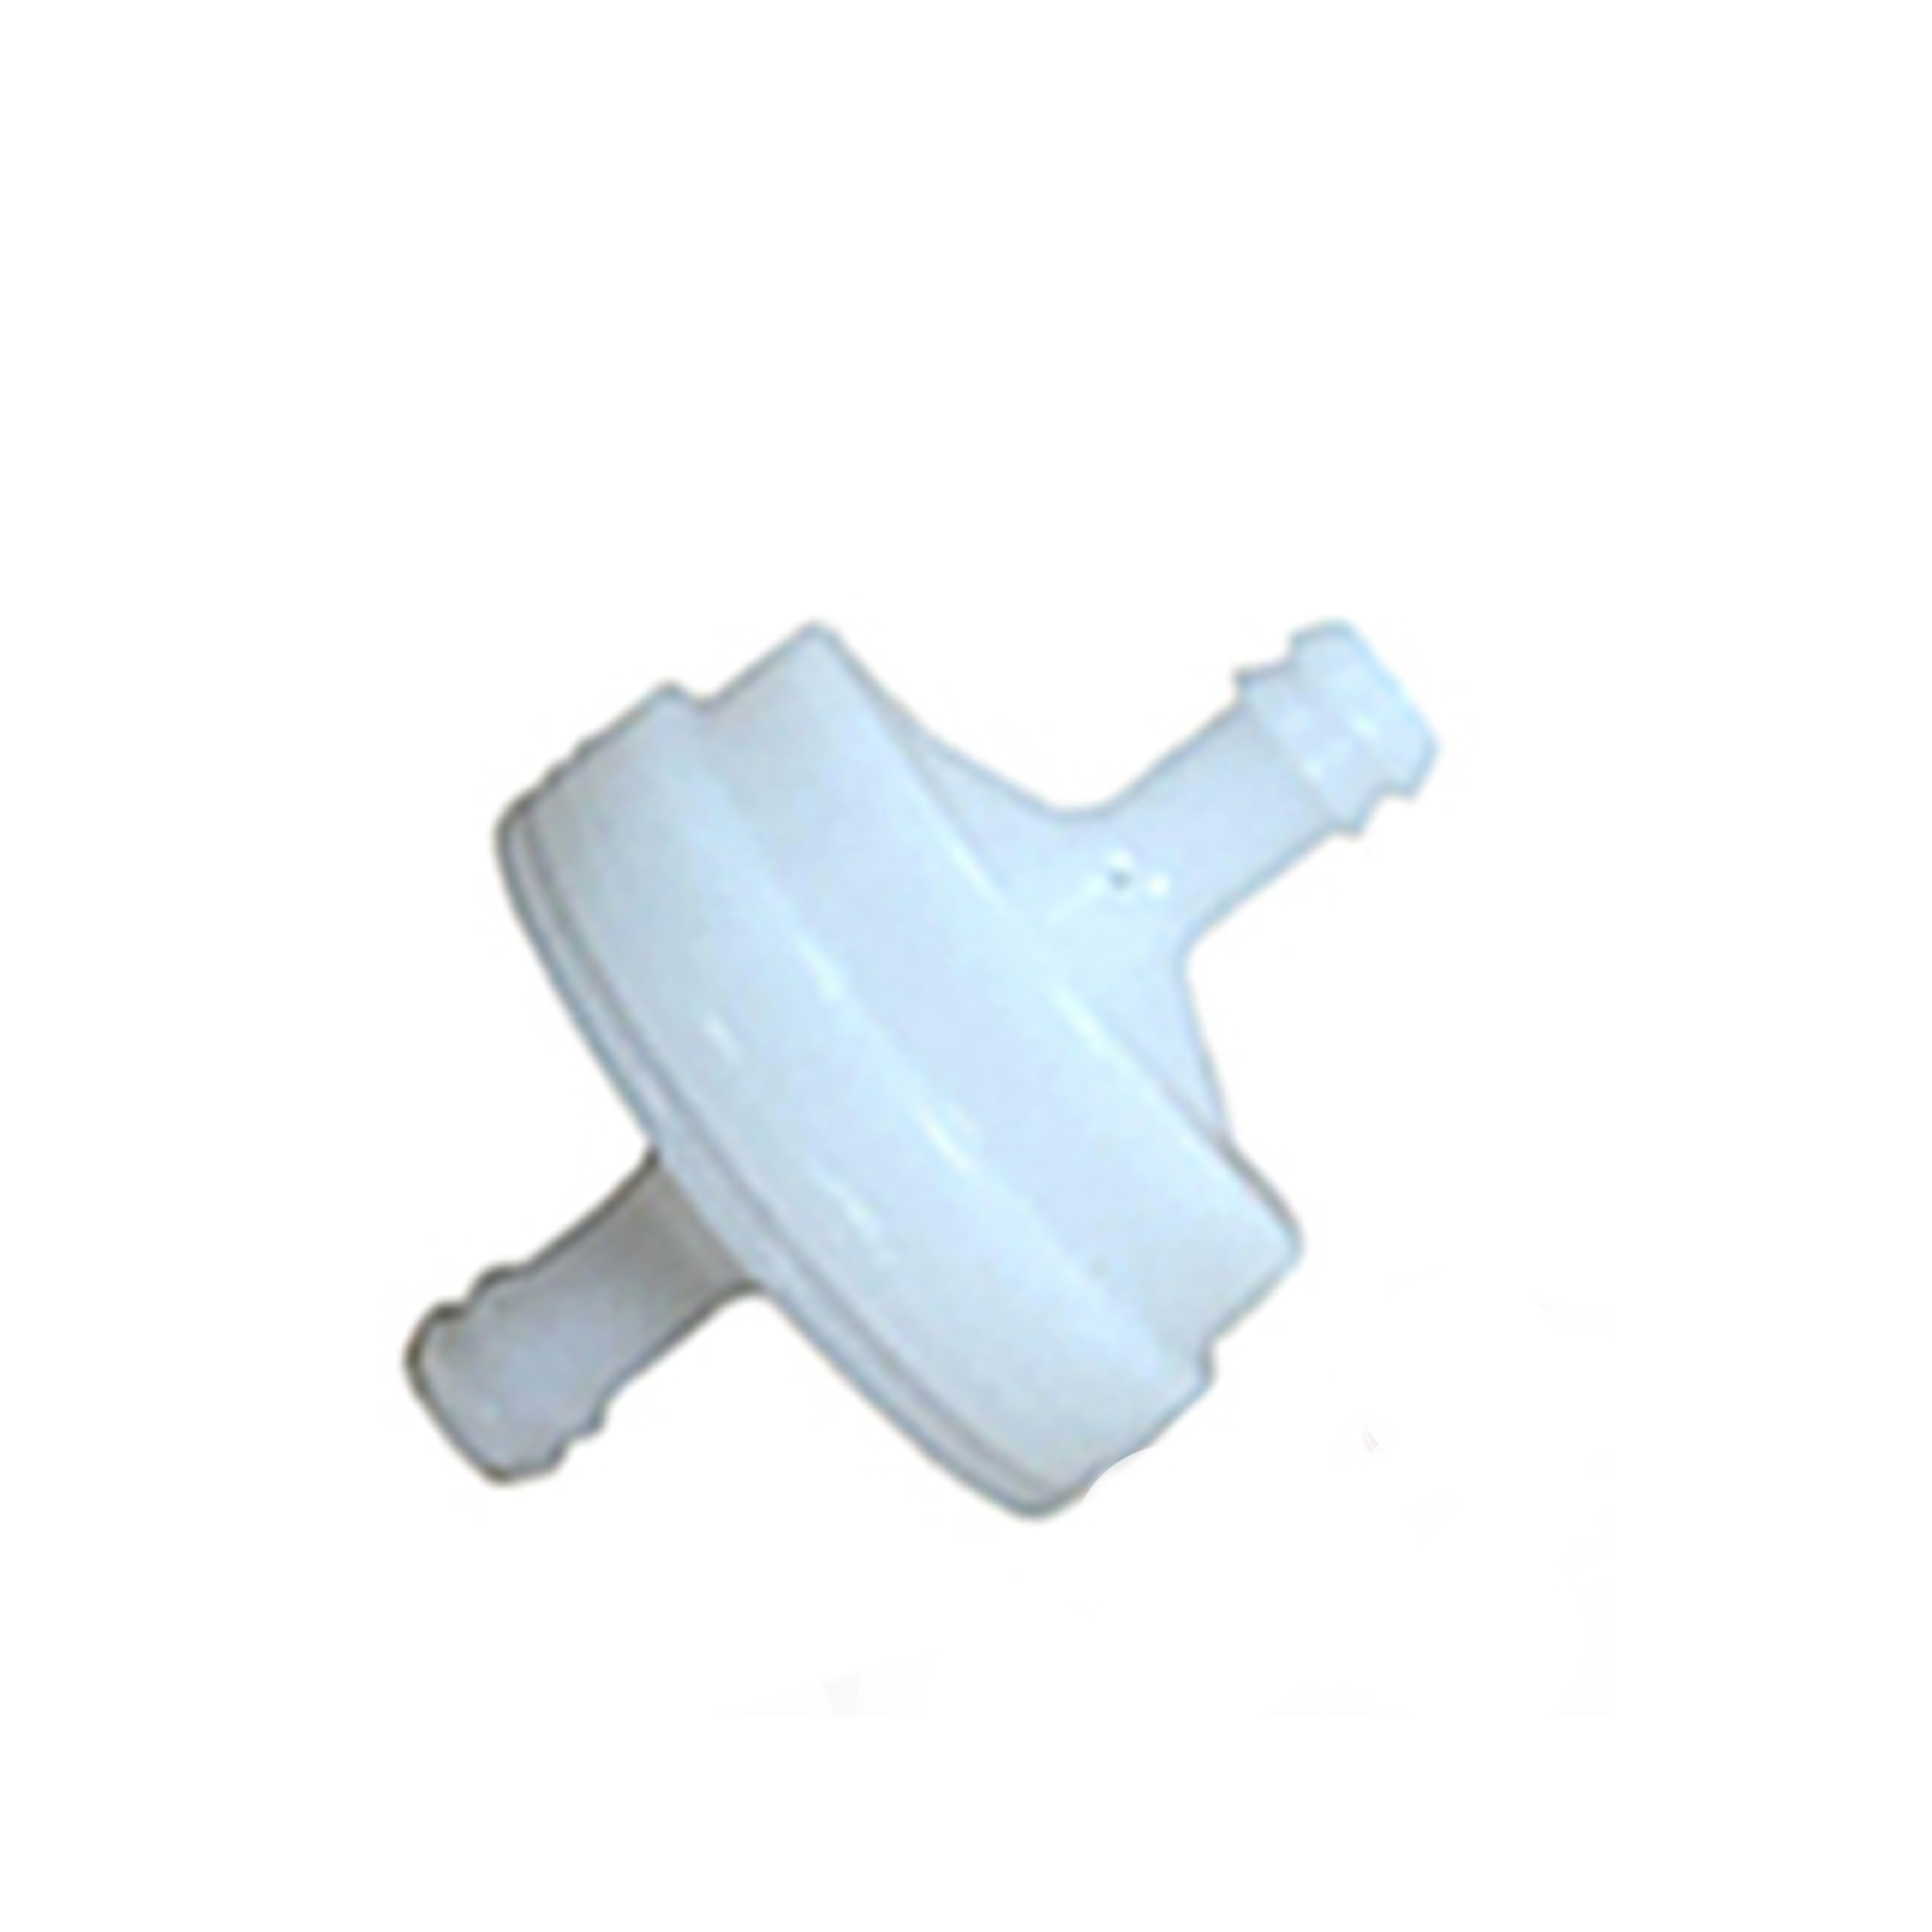 Briggs & Stratton 298090 Fuel Filter Cleaner 1/4 Inline White OEM 298090S, 4105, 5018B, 5018H, 5018K